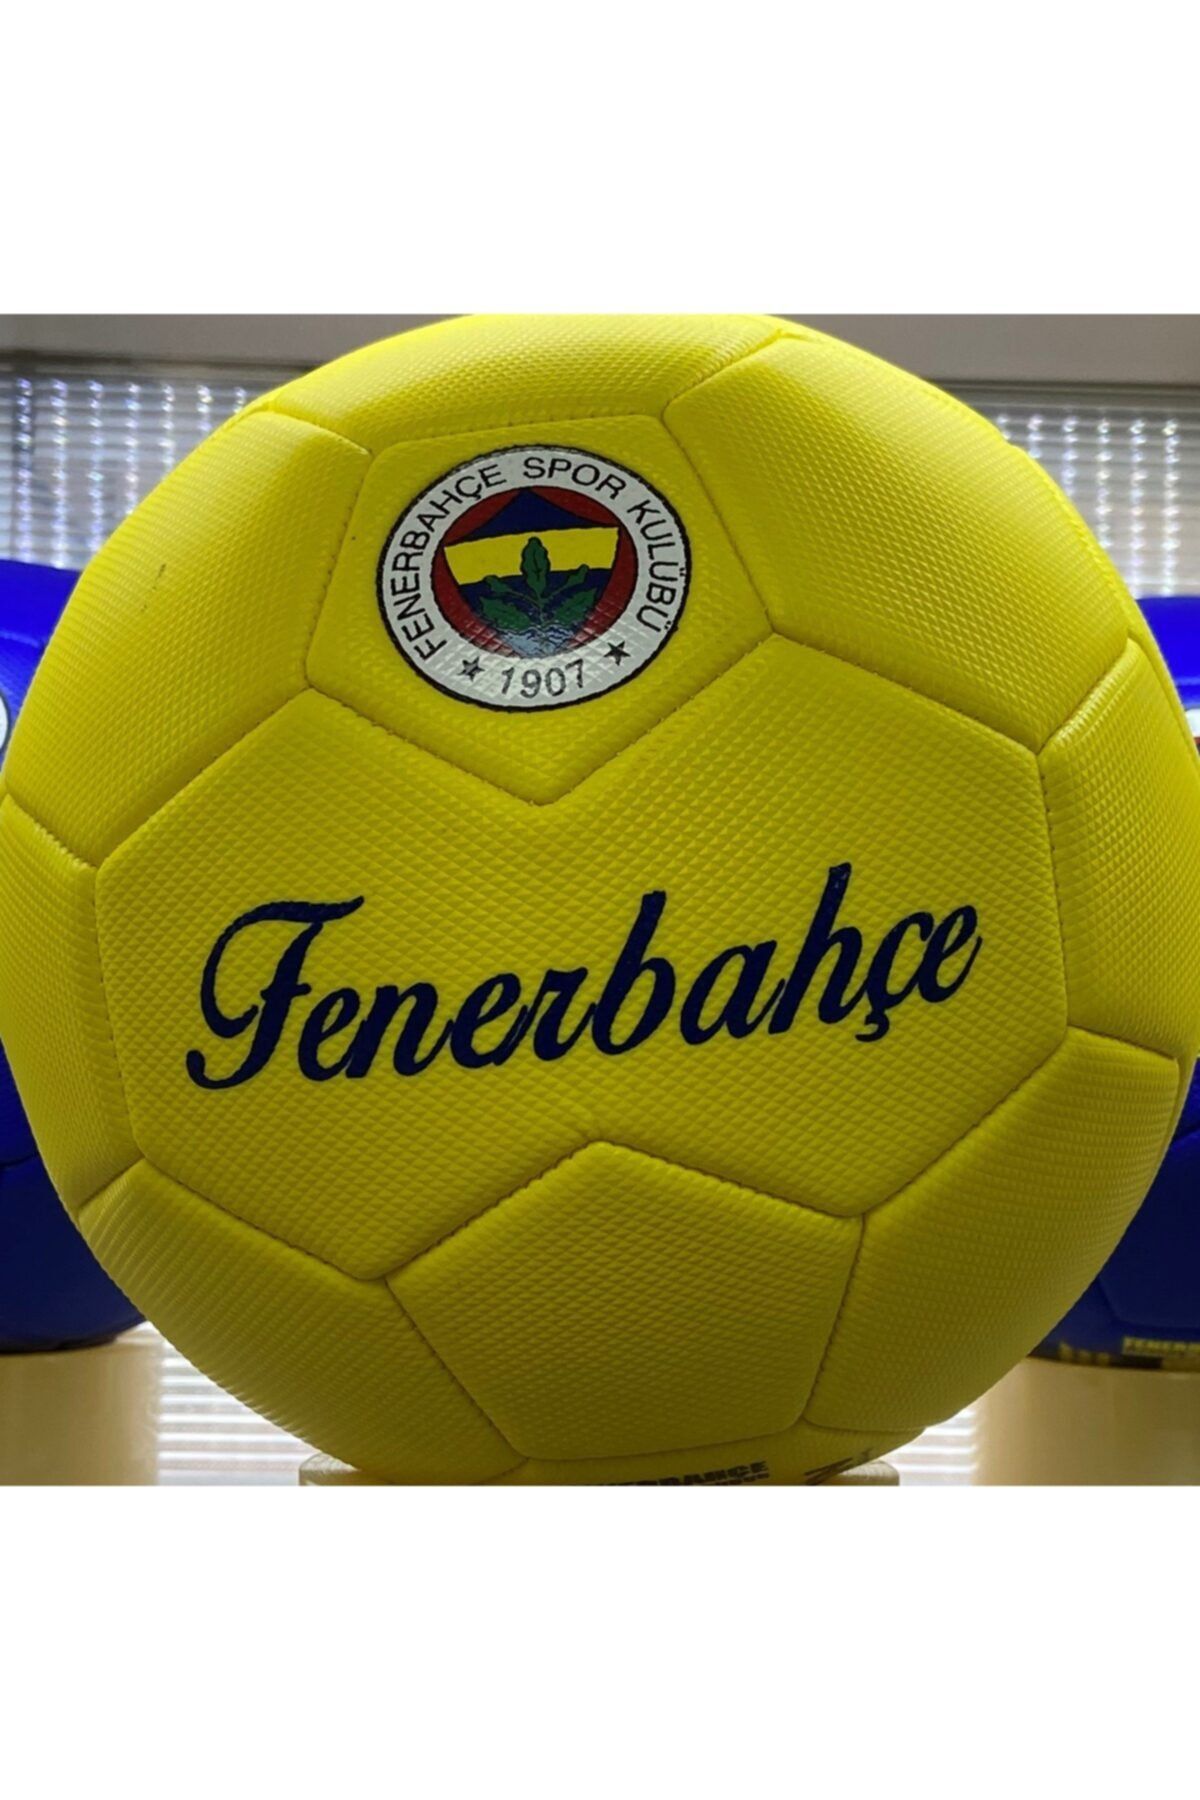 Fenerbahçe Orjinal Lisanslı Futbol Topu - 2